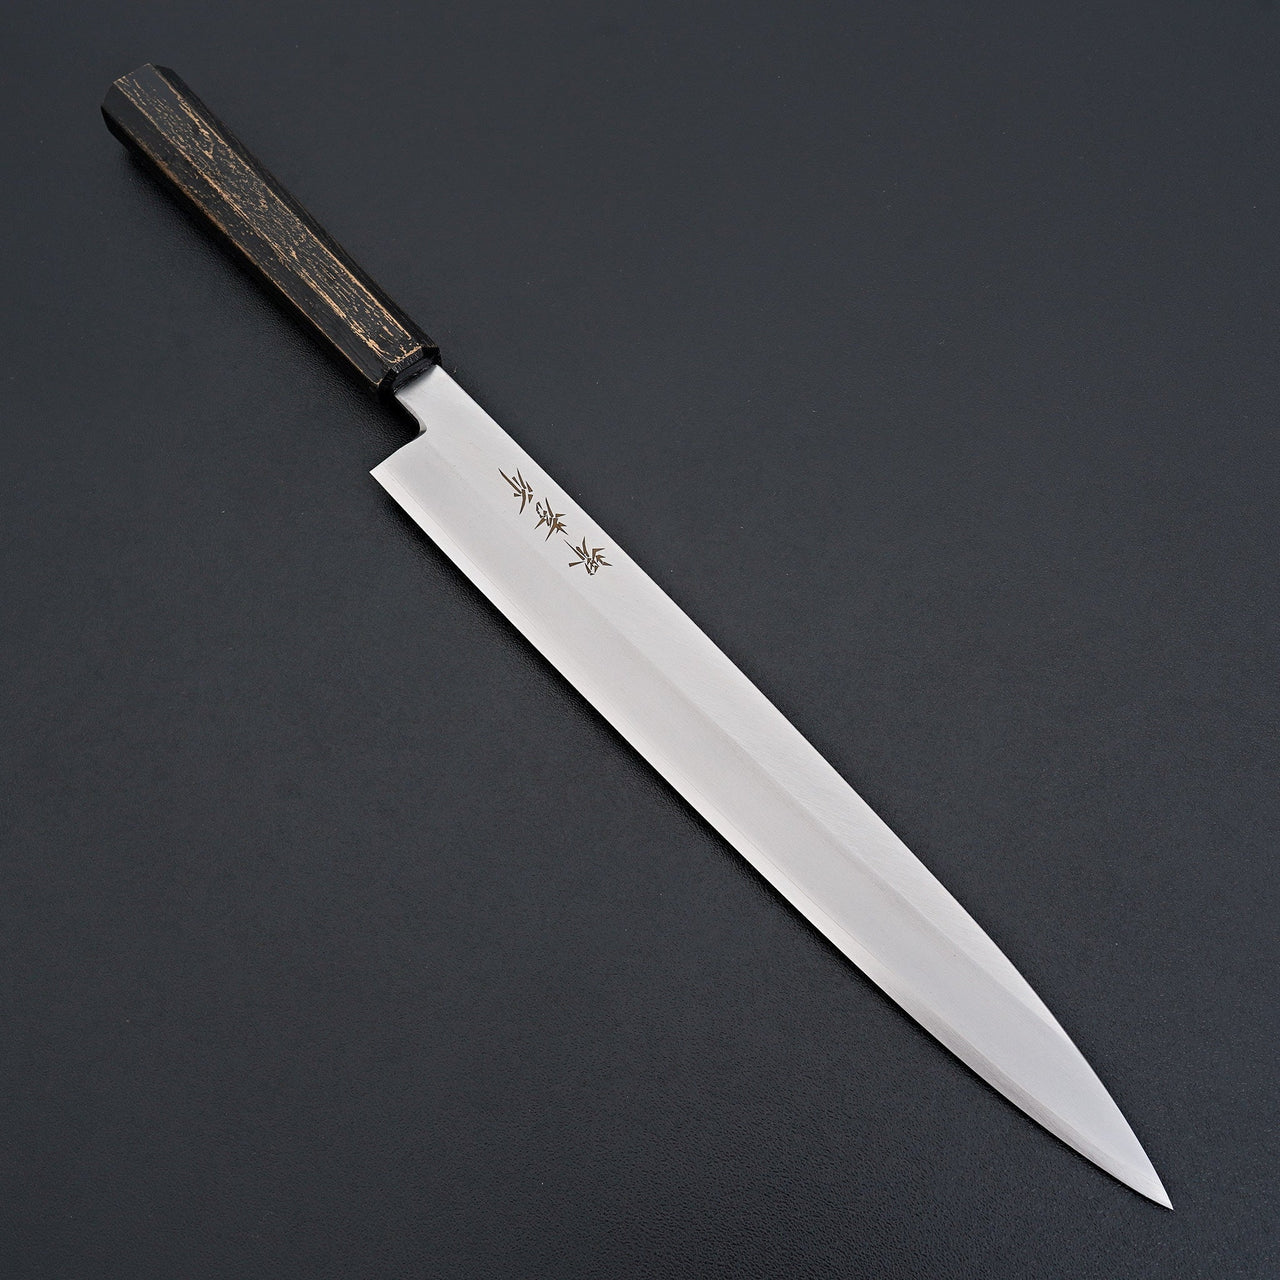 Sakai Takayuki Nanairo Black Gold Ink Yanagiba 270mm-Knife-Sakai Takayuki-Carbon Knife Co